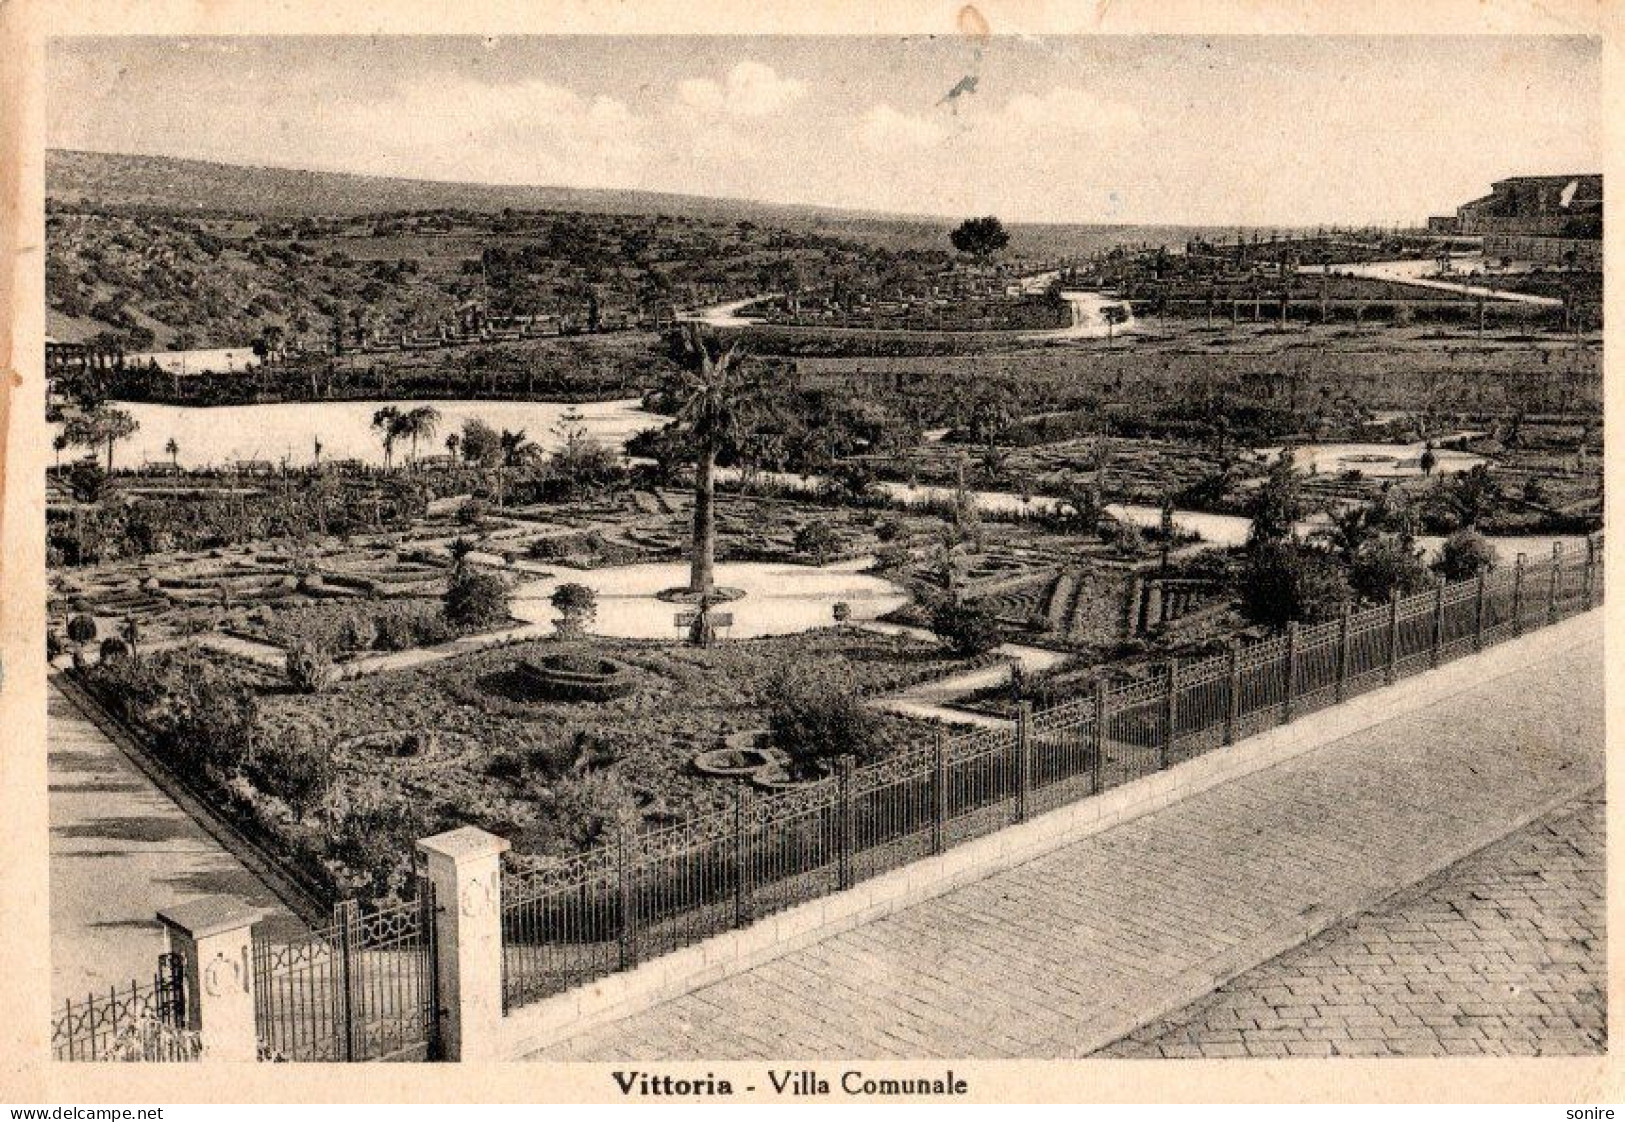 VITTORIA (RAGUSA) VILLA COMUNALE - ED.CONSOLINO - VG FG - C7193 - Ragusa